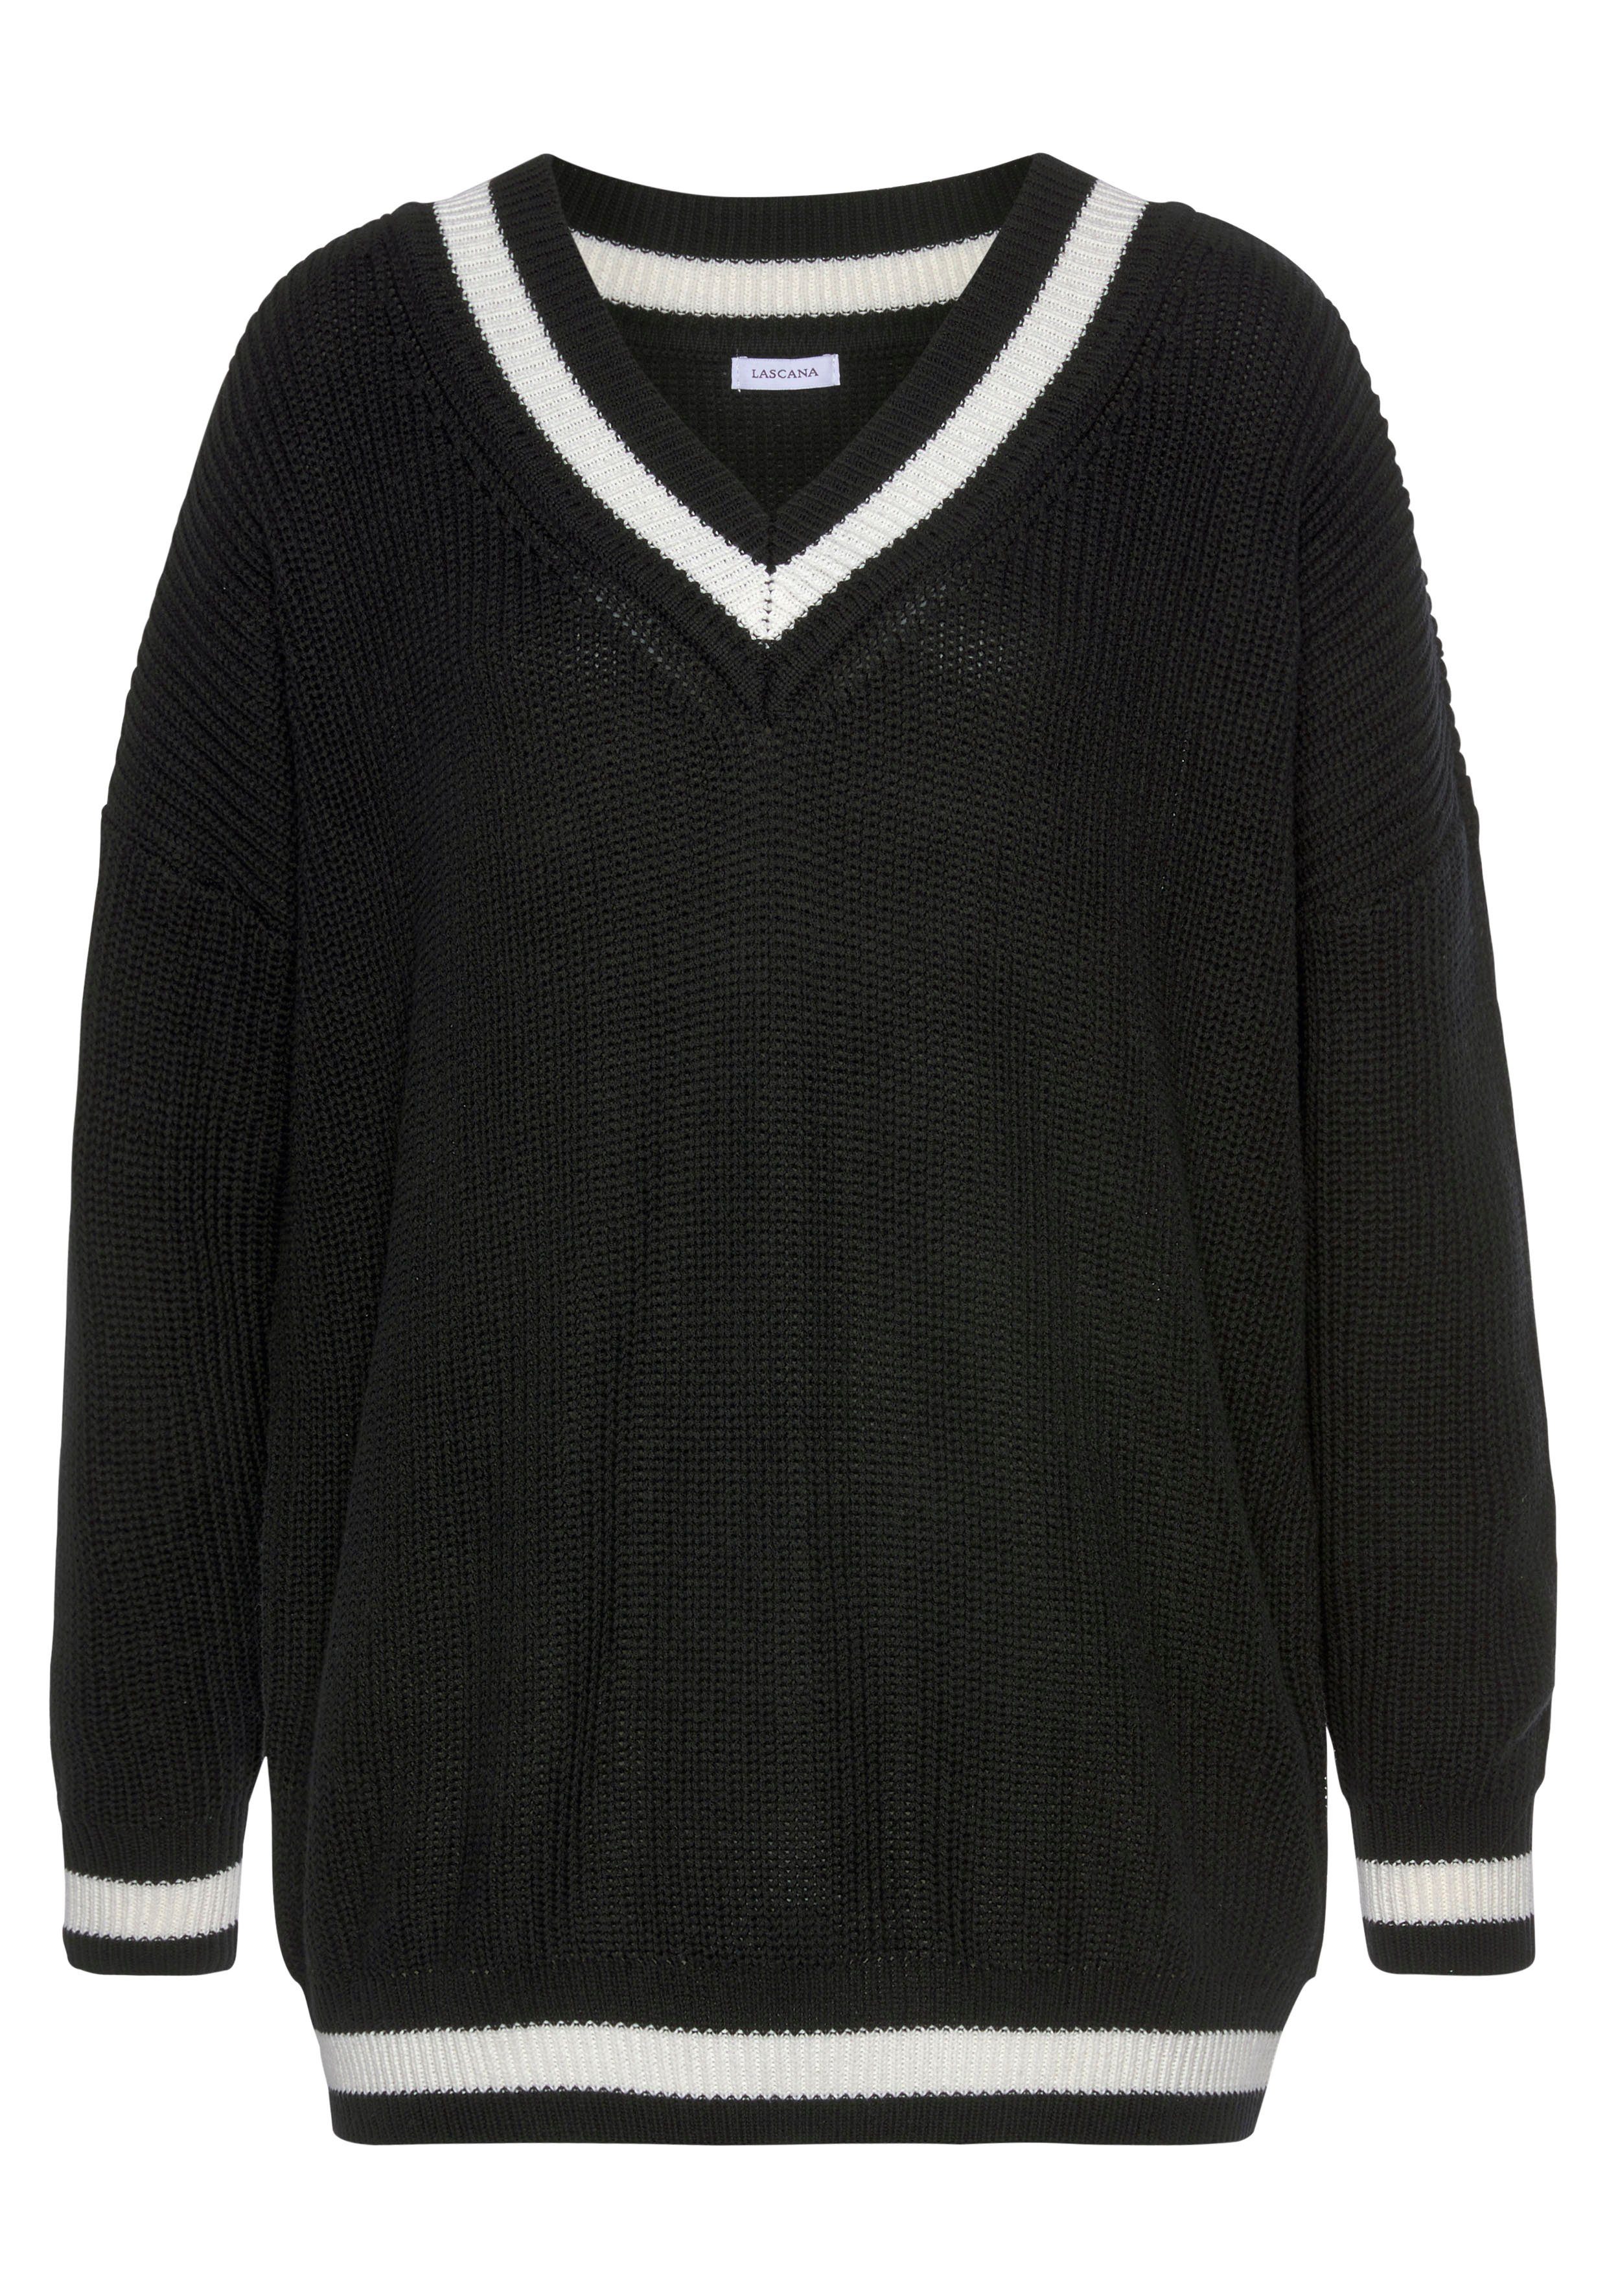 LASCANA V-Ausschnitt-Pullover mit Streifen-Details schwarz